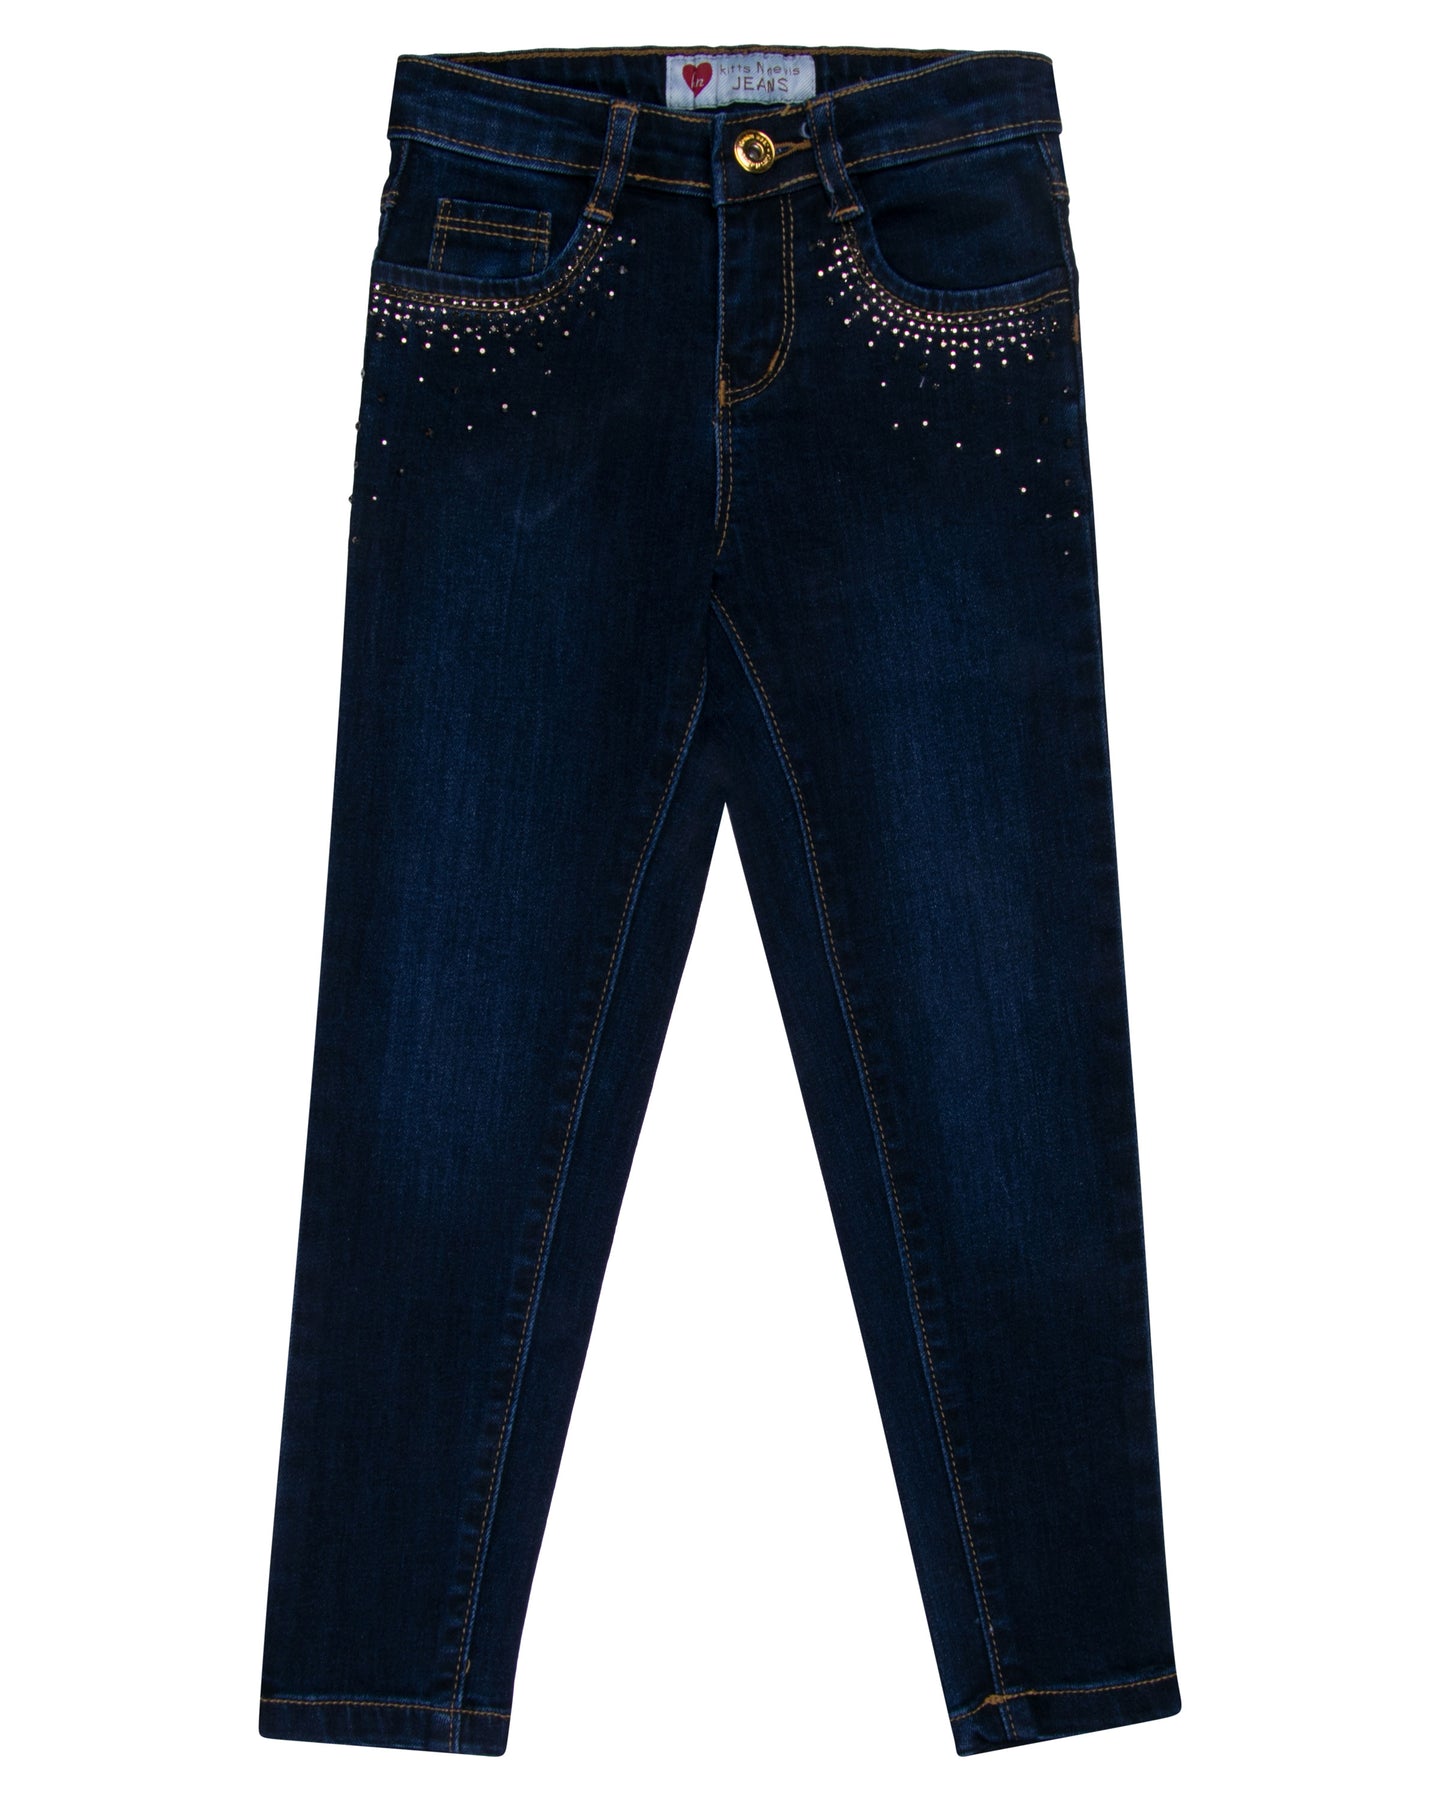 Girls Fashion Dark Blue Jeans